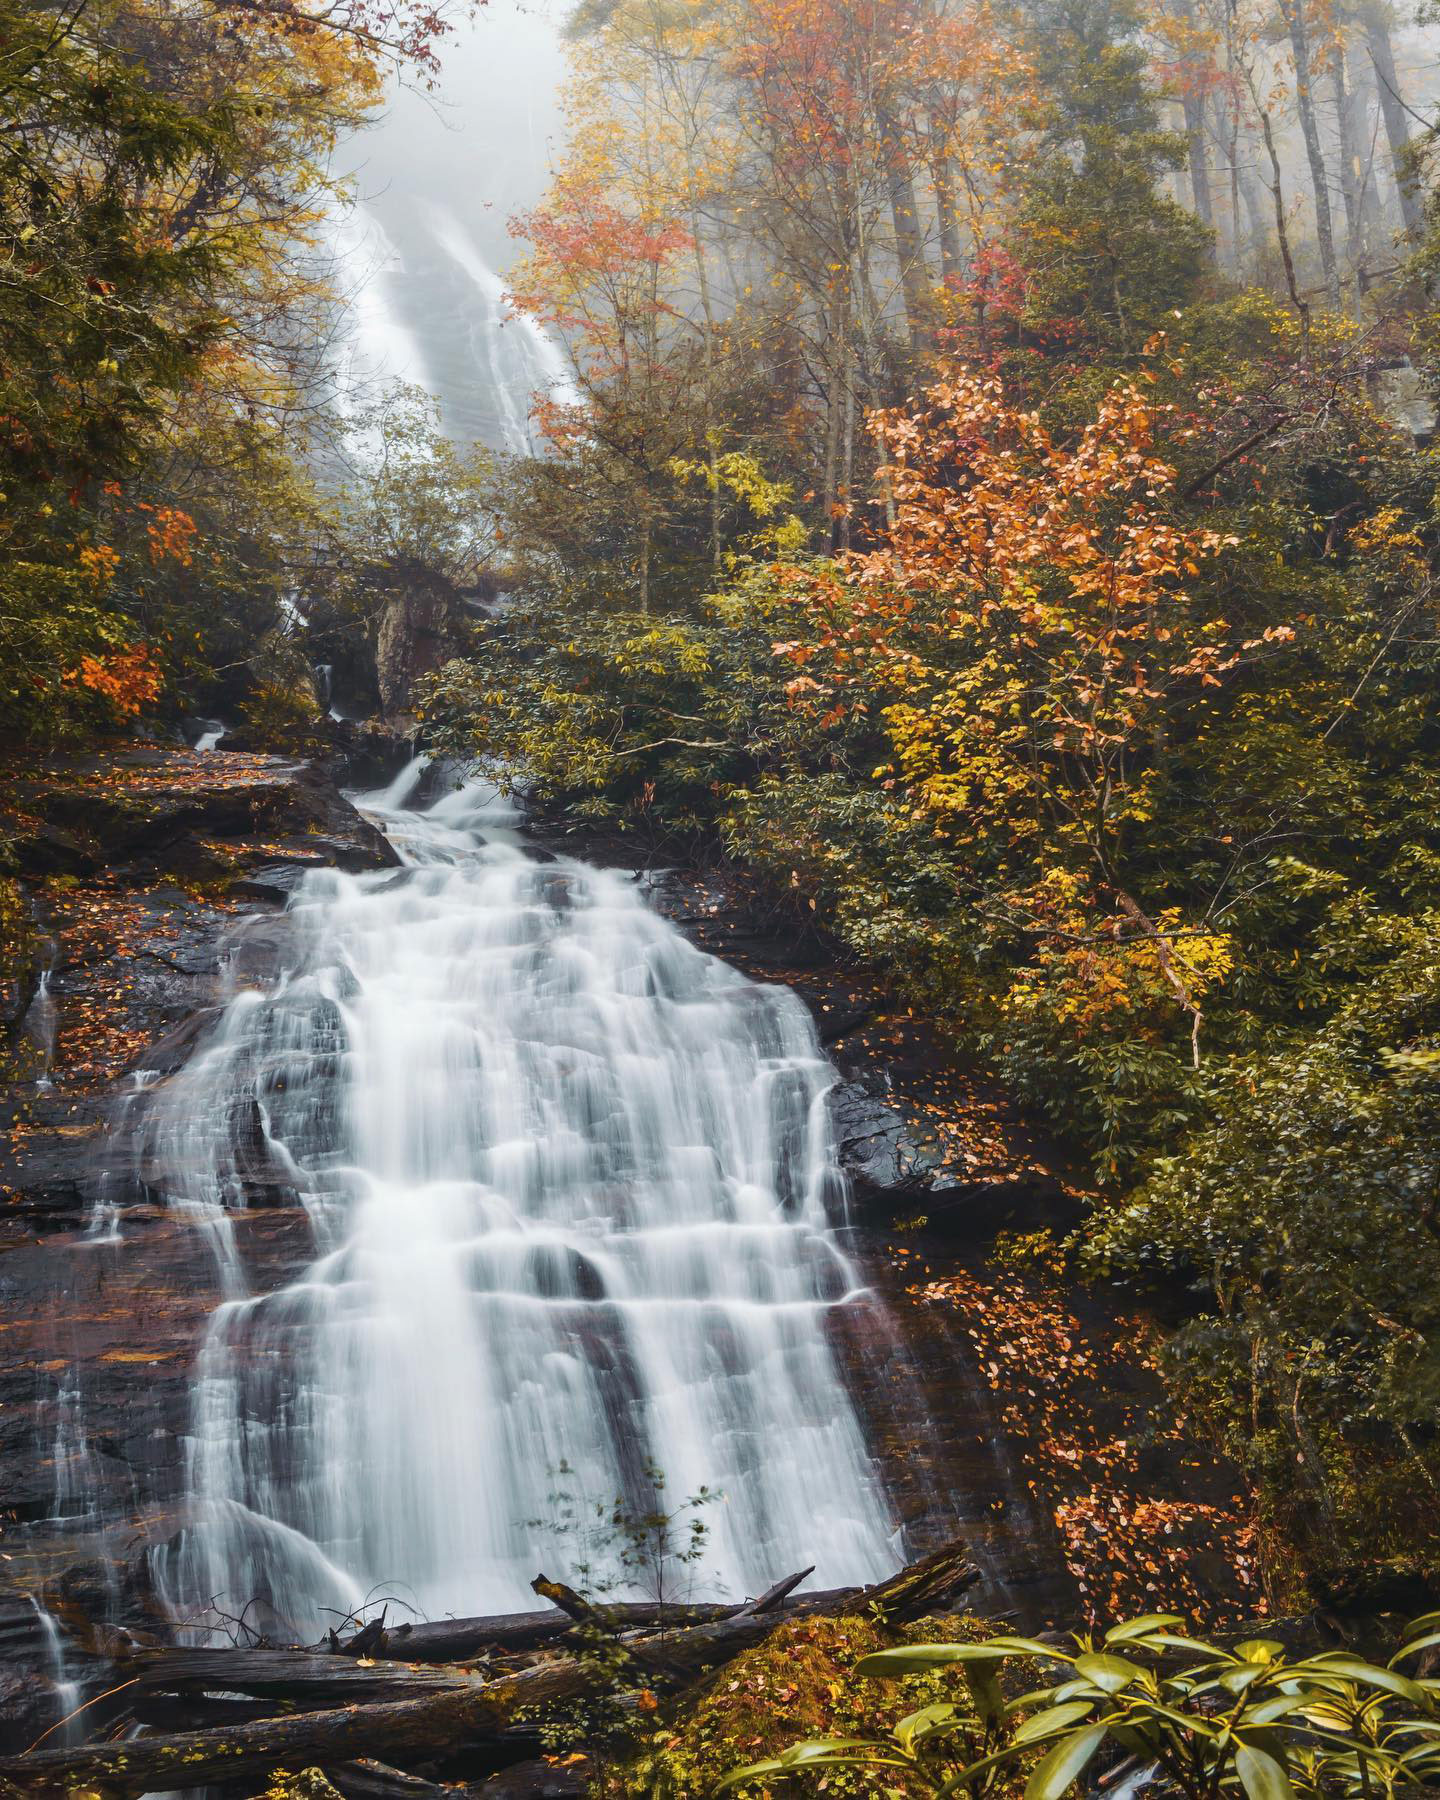 乔治亚州海伦的安娜鲁比瀑布。图片由@westy4xer